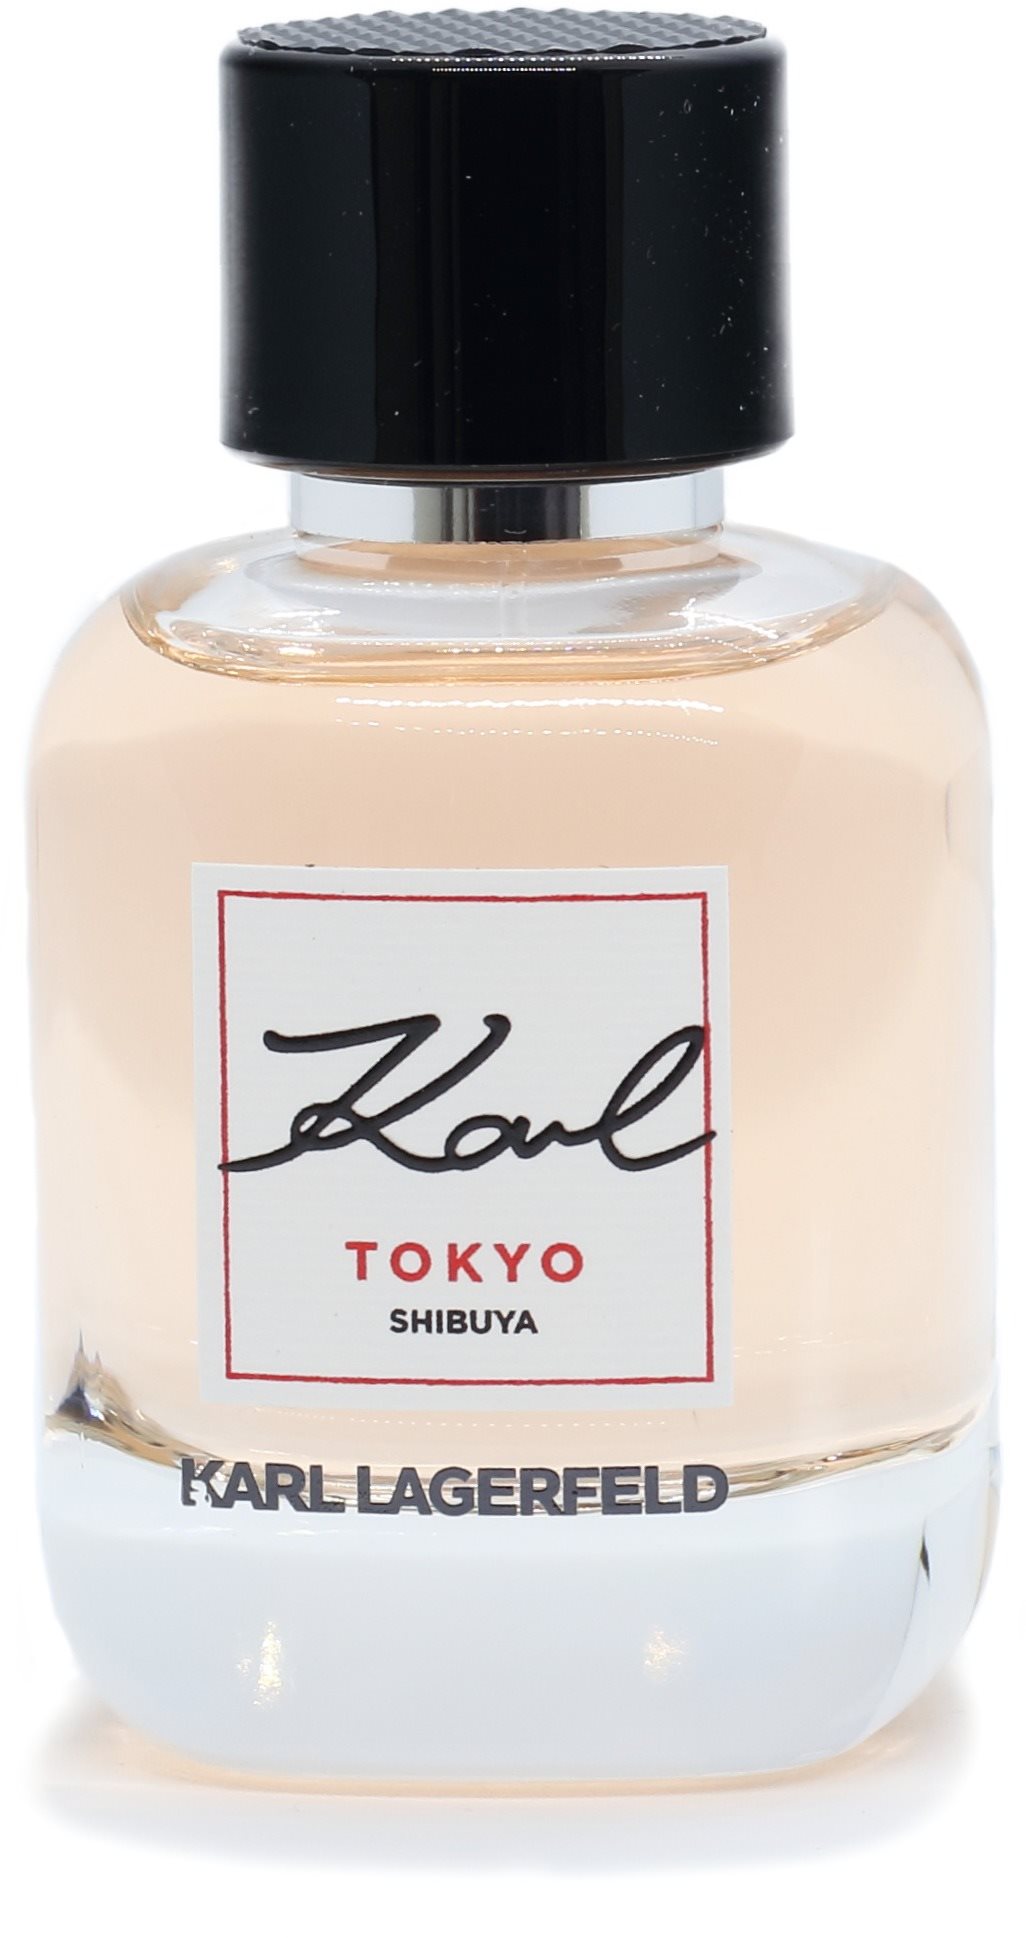 Parfüm KARL LAGERFELD Karl Tokyo Shibuya EdP 60 ml